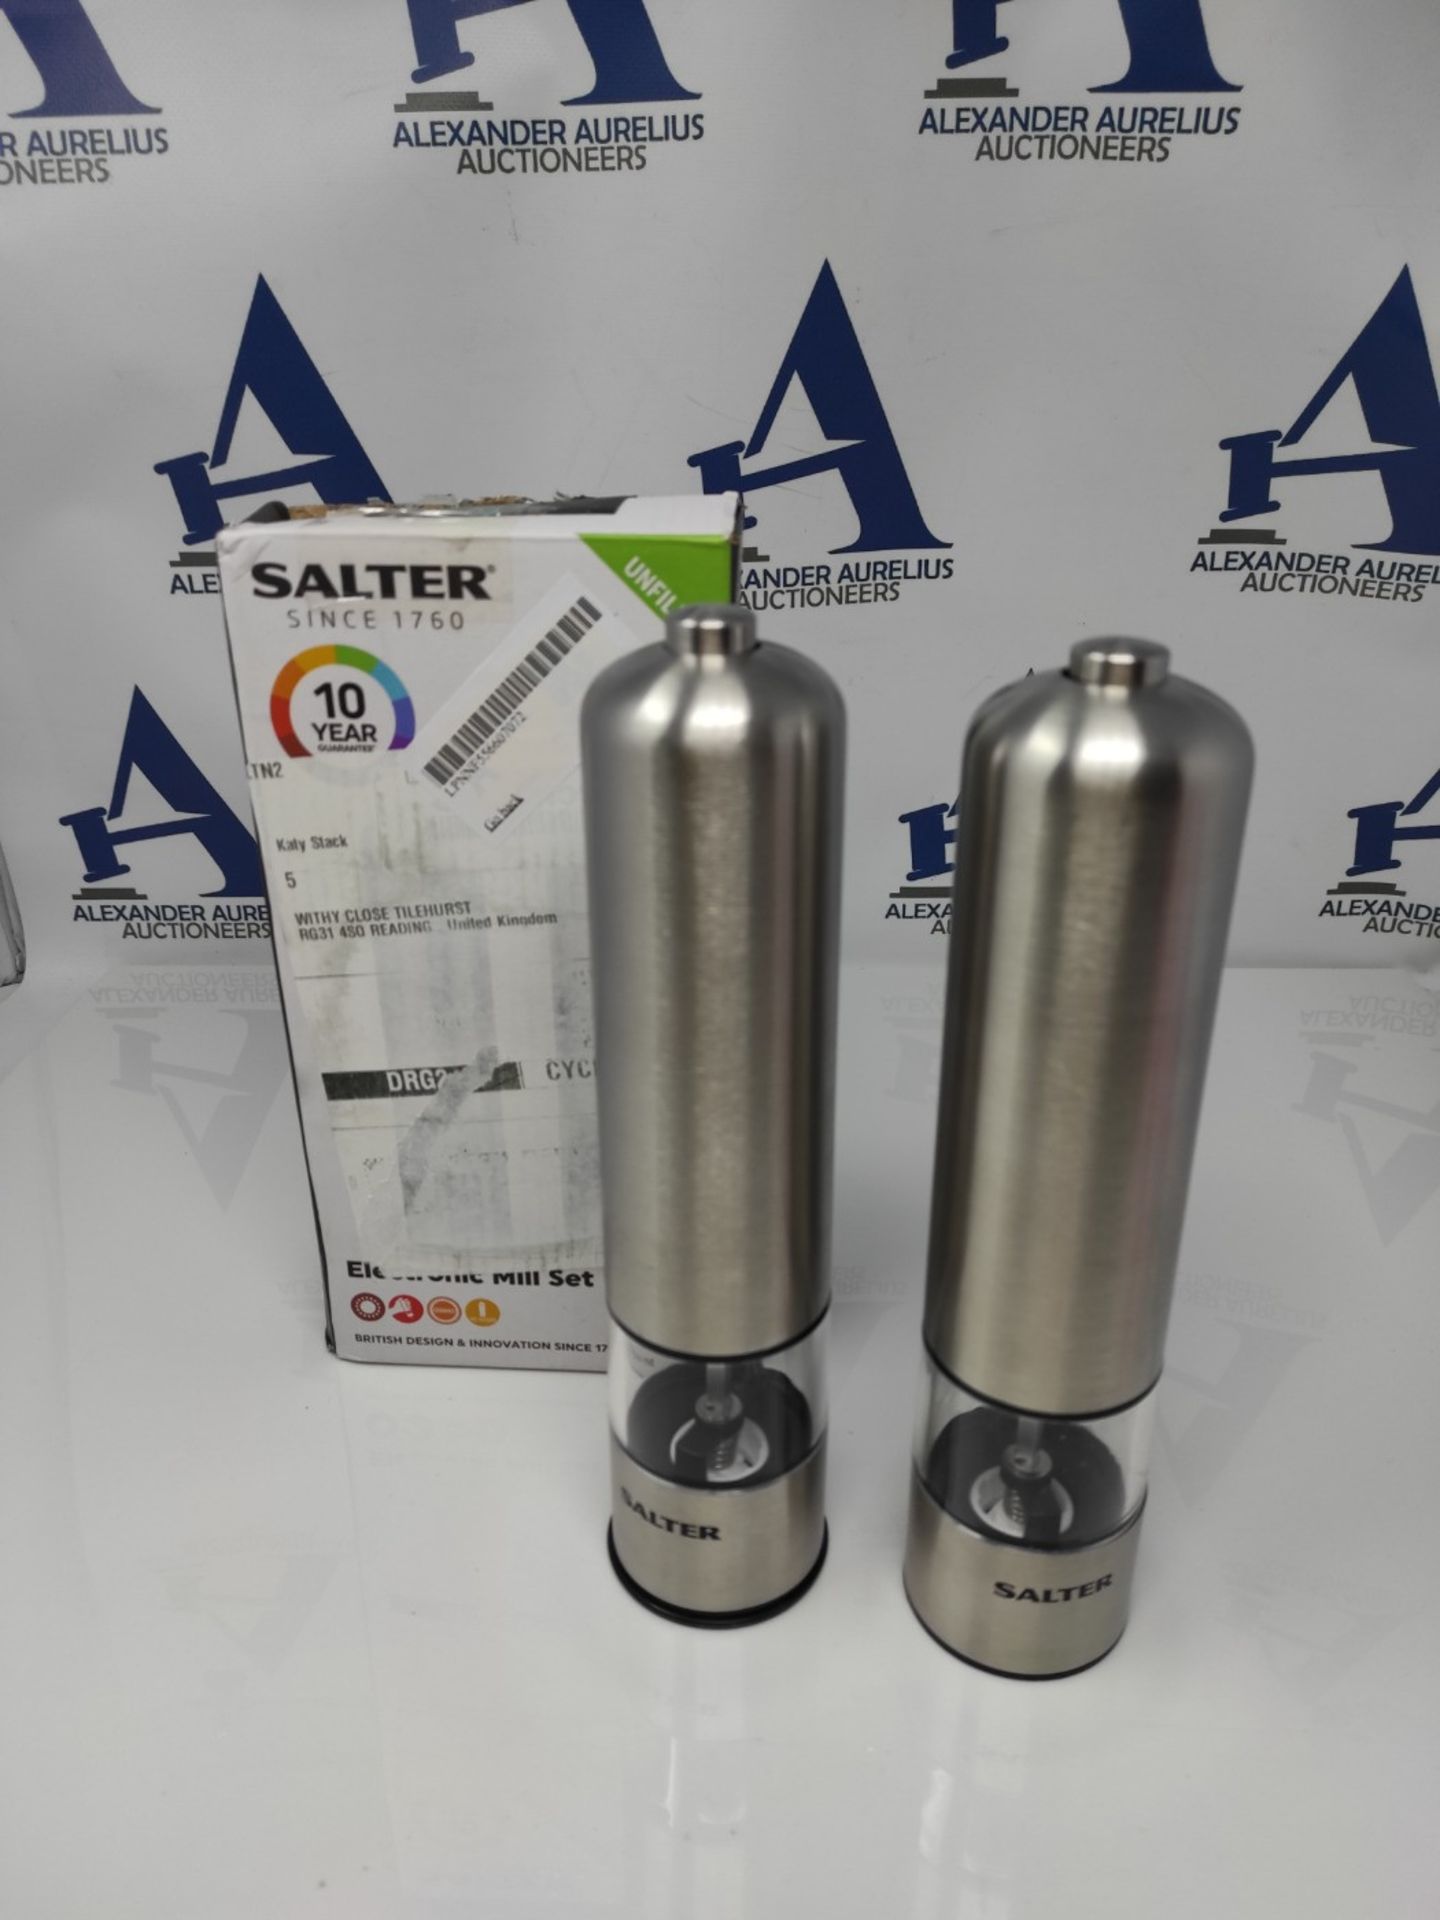 Salter 7722 SSTURA Electric Salt & Pepper Grinder Set - BPA-Free, Spice Mills, One Han - Image 2 of 2